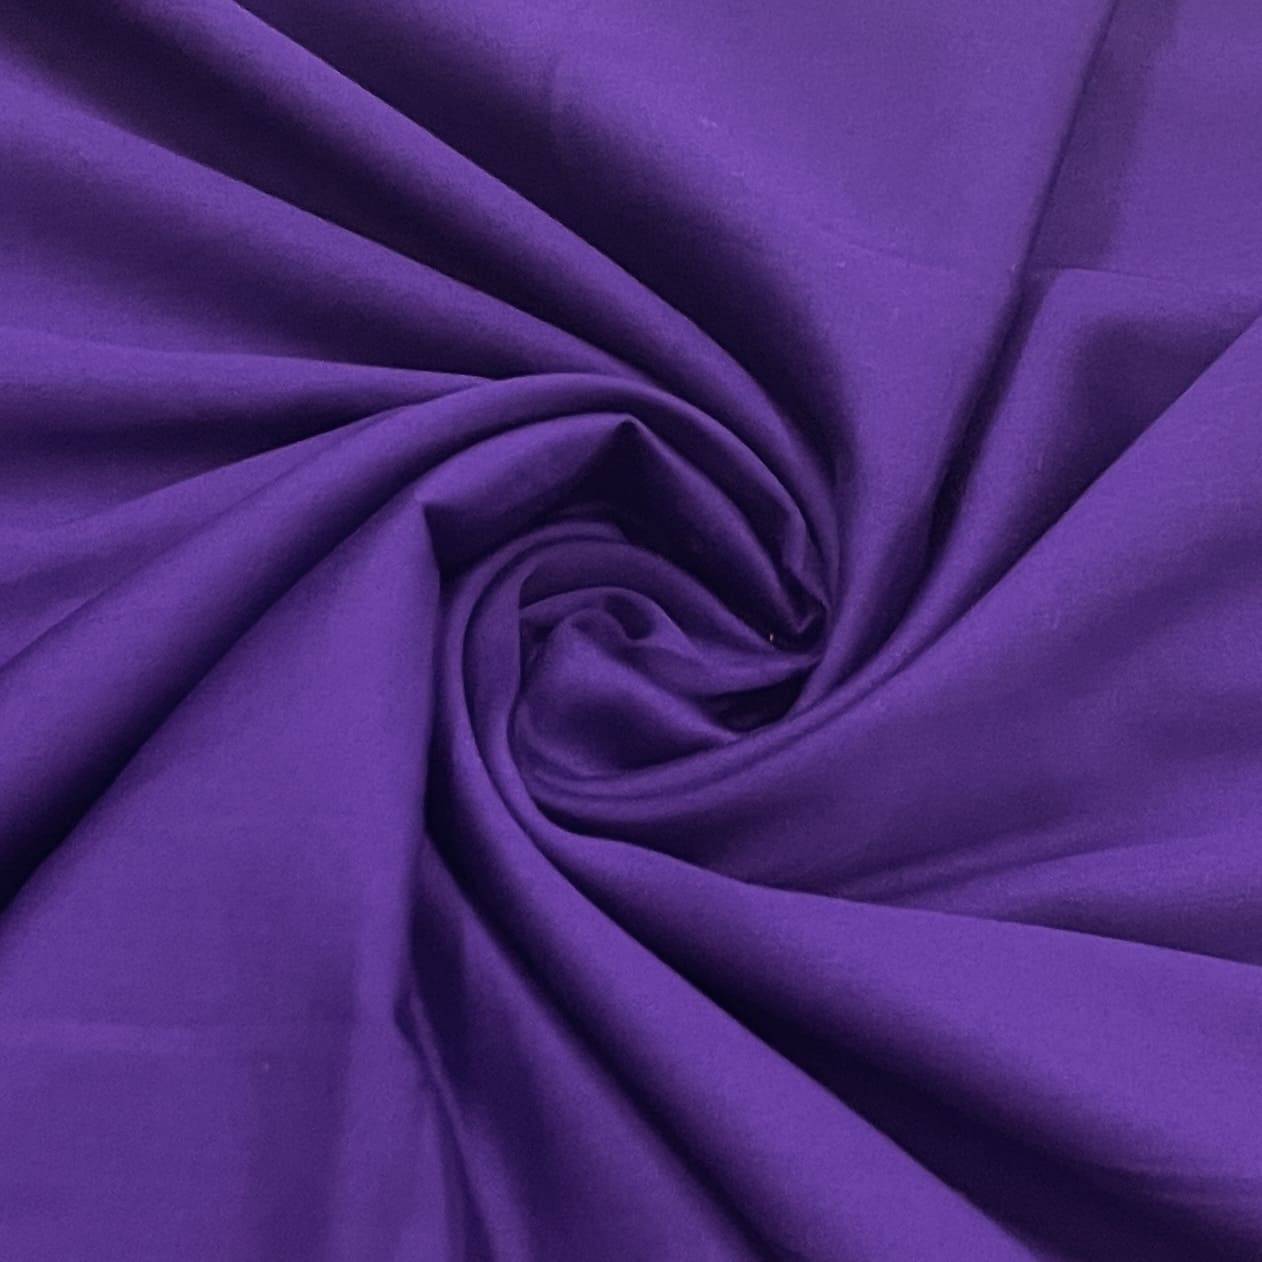 classic violet purple solid cotton satin